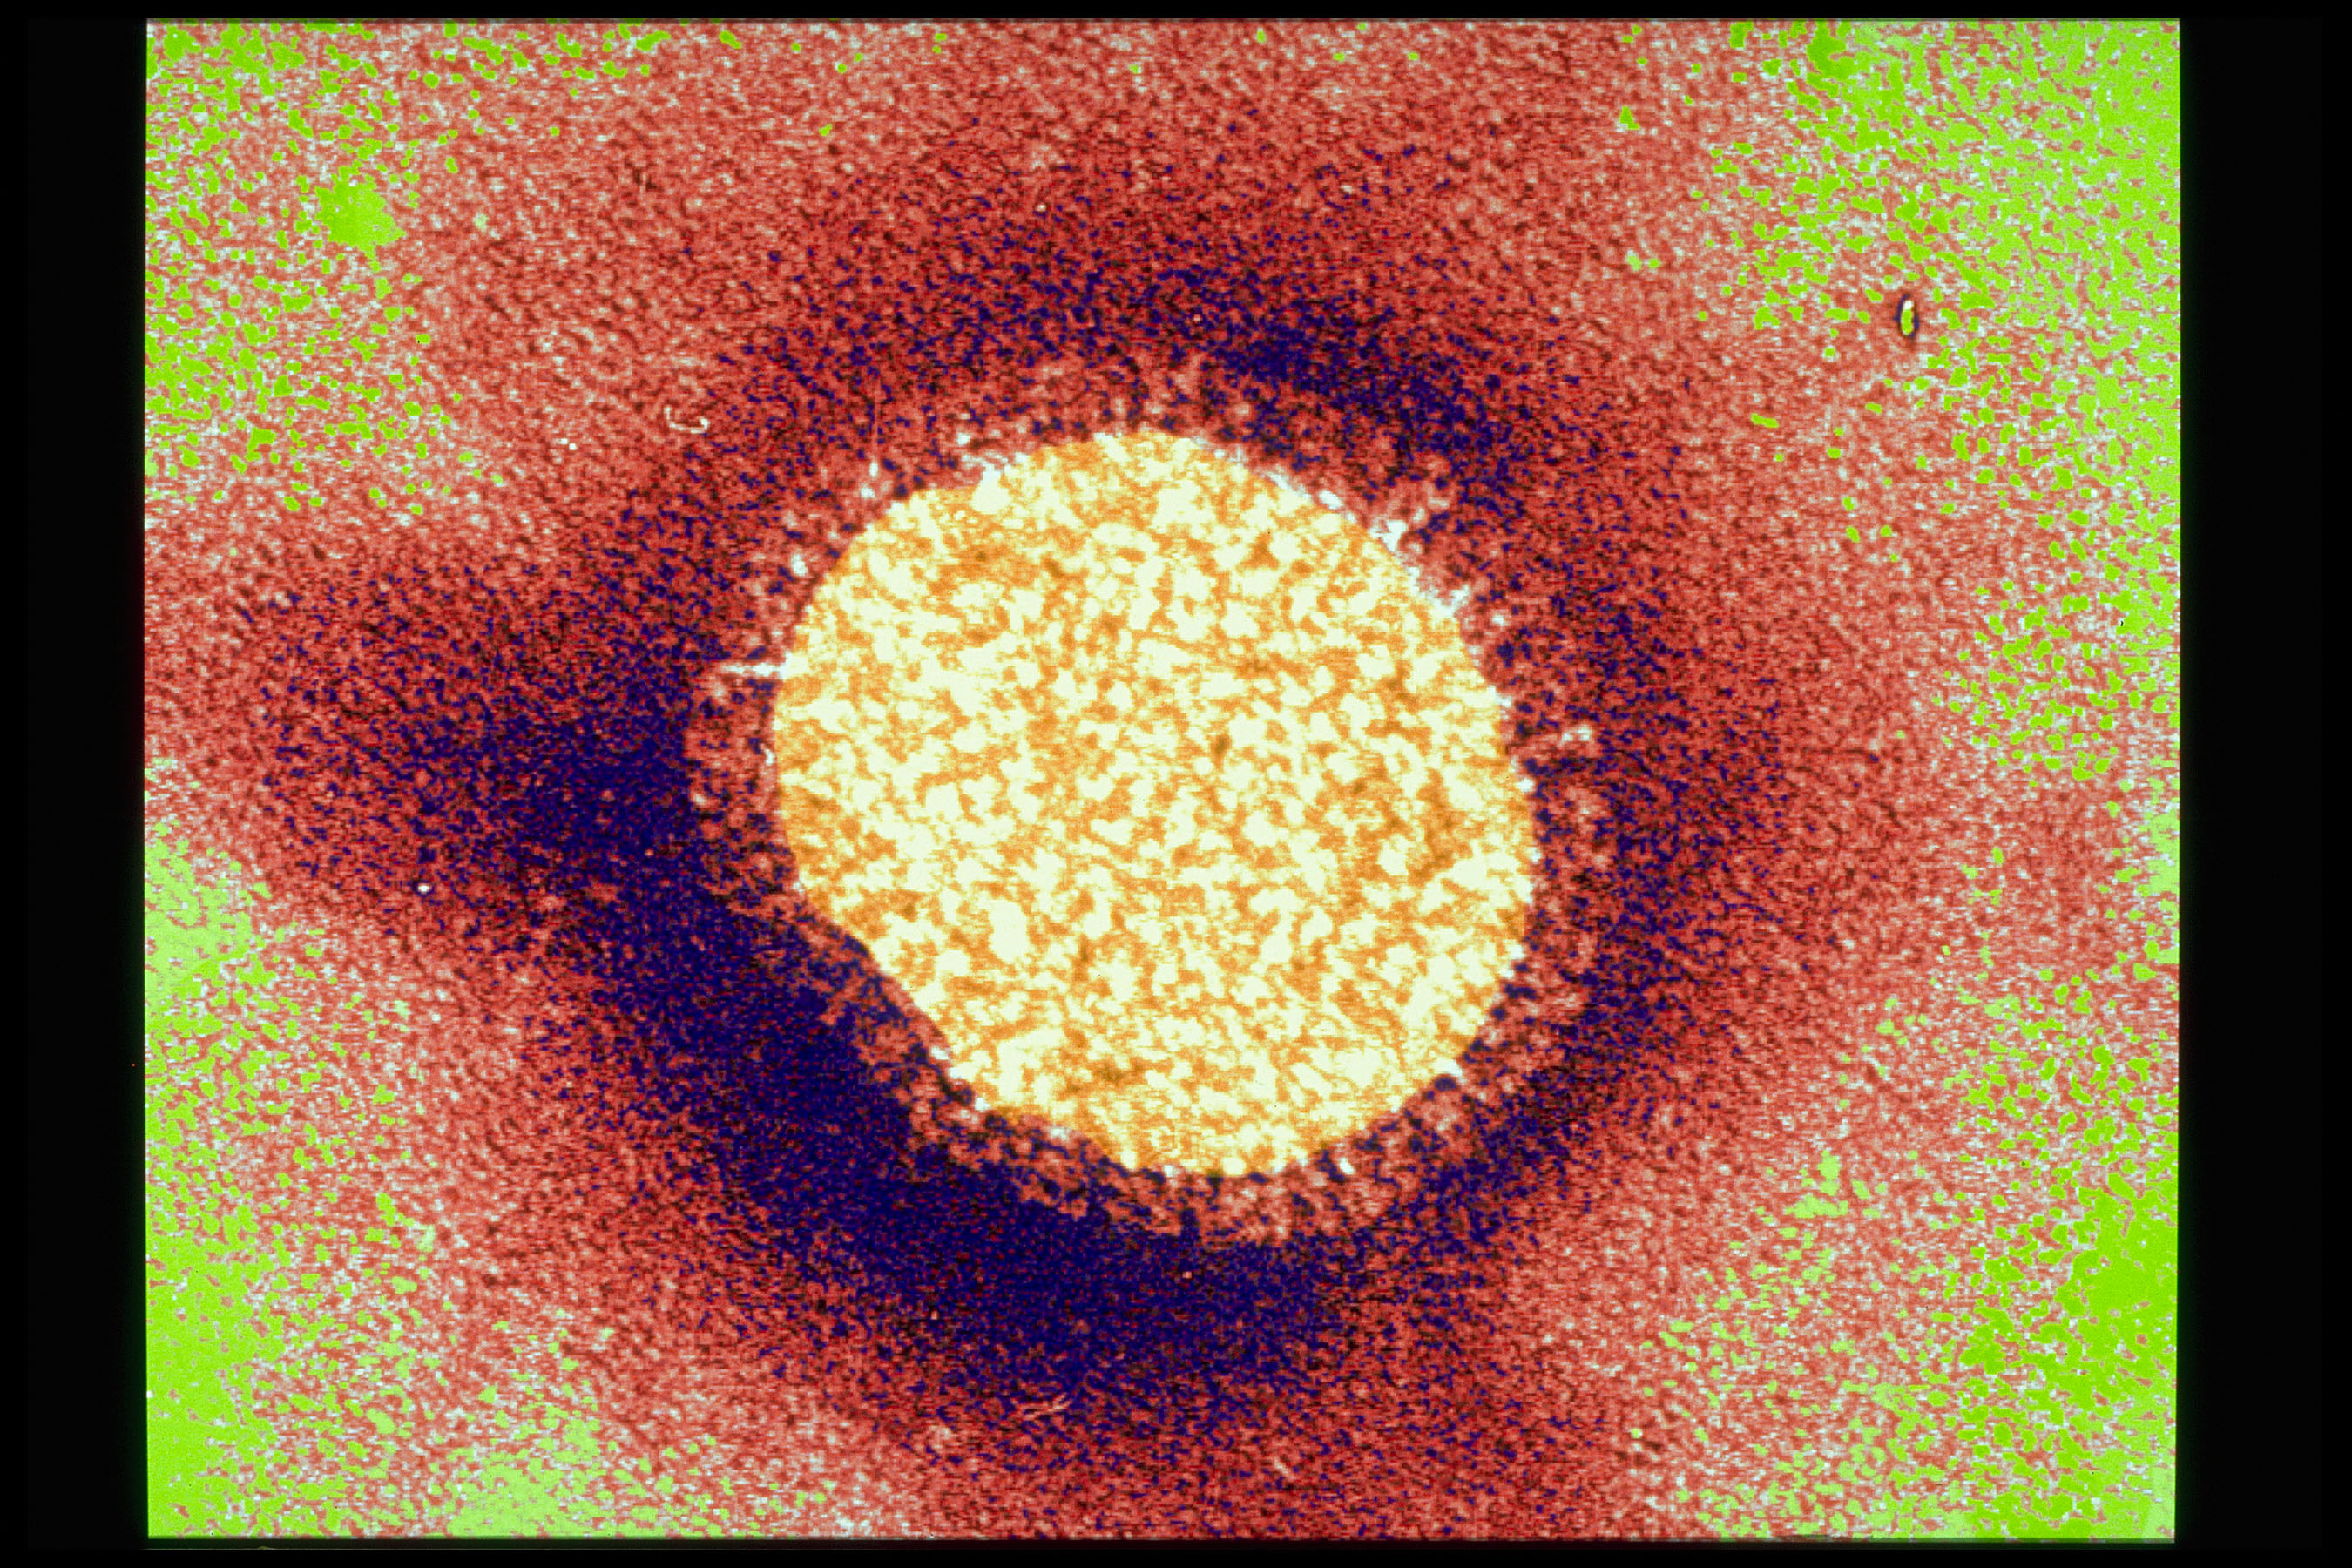 Вирус гриппа под. Вирус гриппа микрофотография. Вирус гриппа под микроскопом h1n1. Электронная микрофотография вируса гриппа а. Вирус h1n1 испанка под микроскопом.